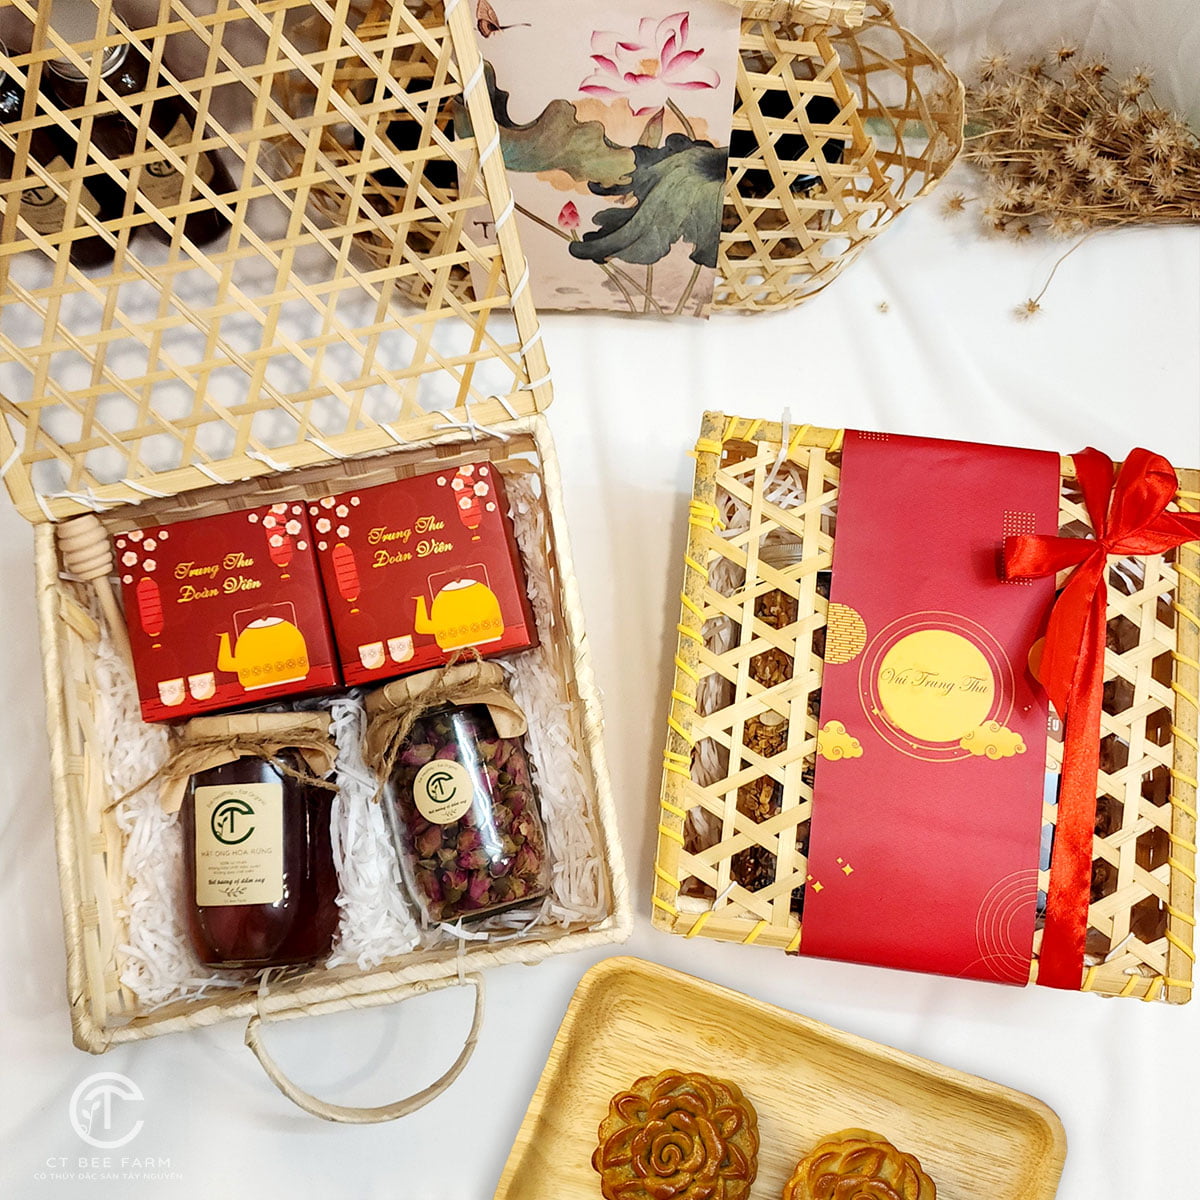 Set quà tặng trung thu - bánh trung thu, mật ong và trà hoa hồng